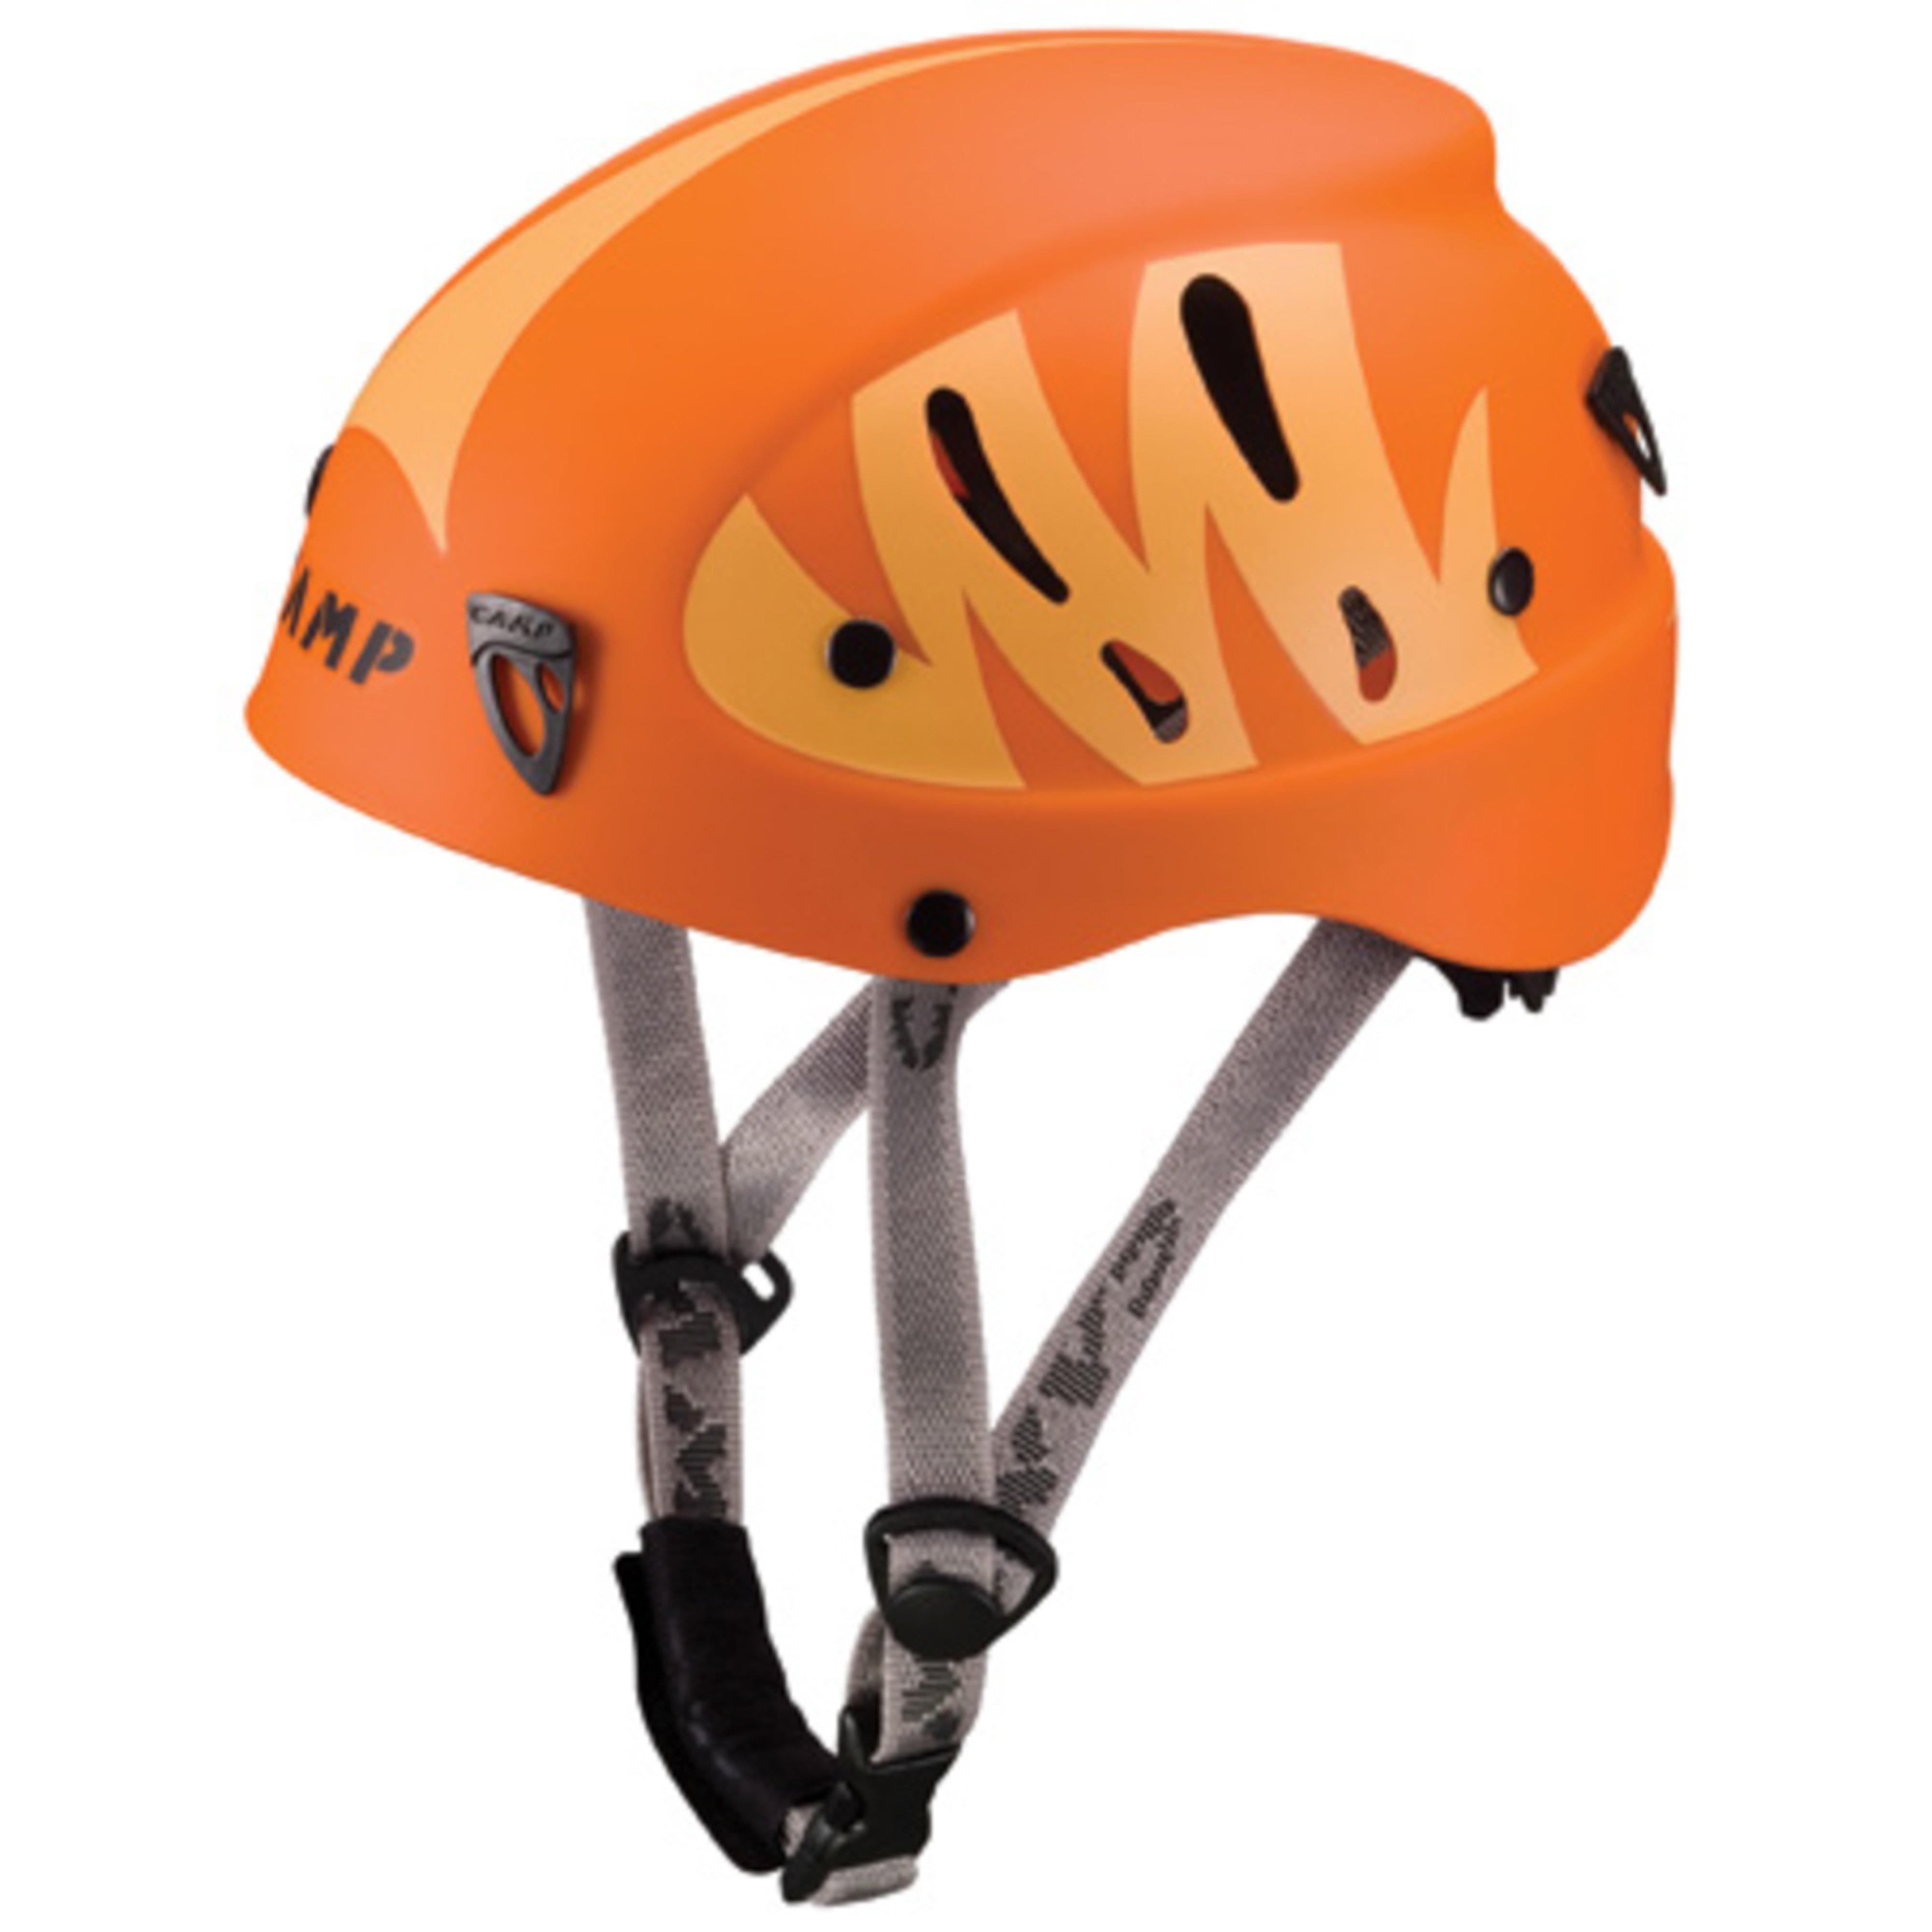 Camp Armour Junior Helmet Review